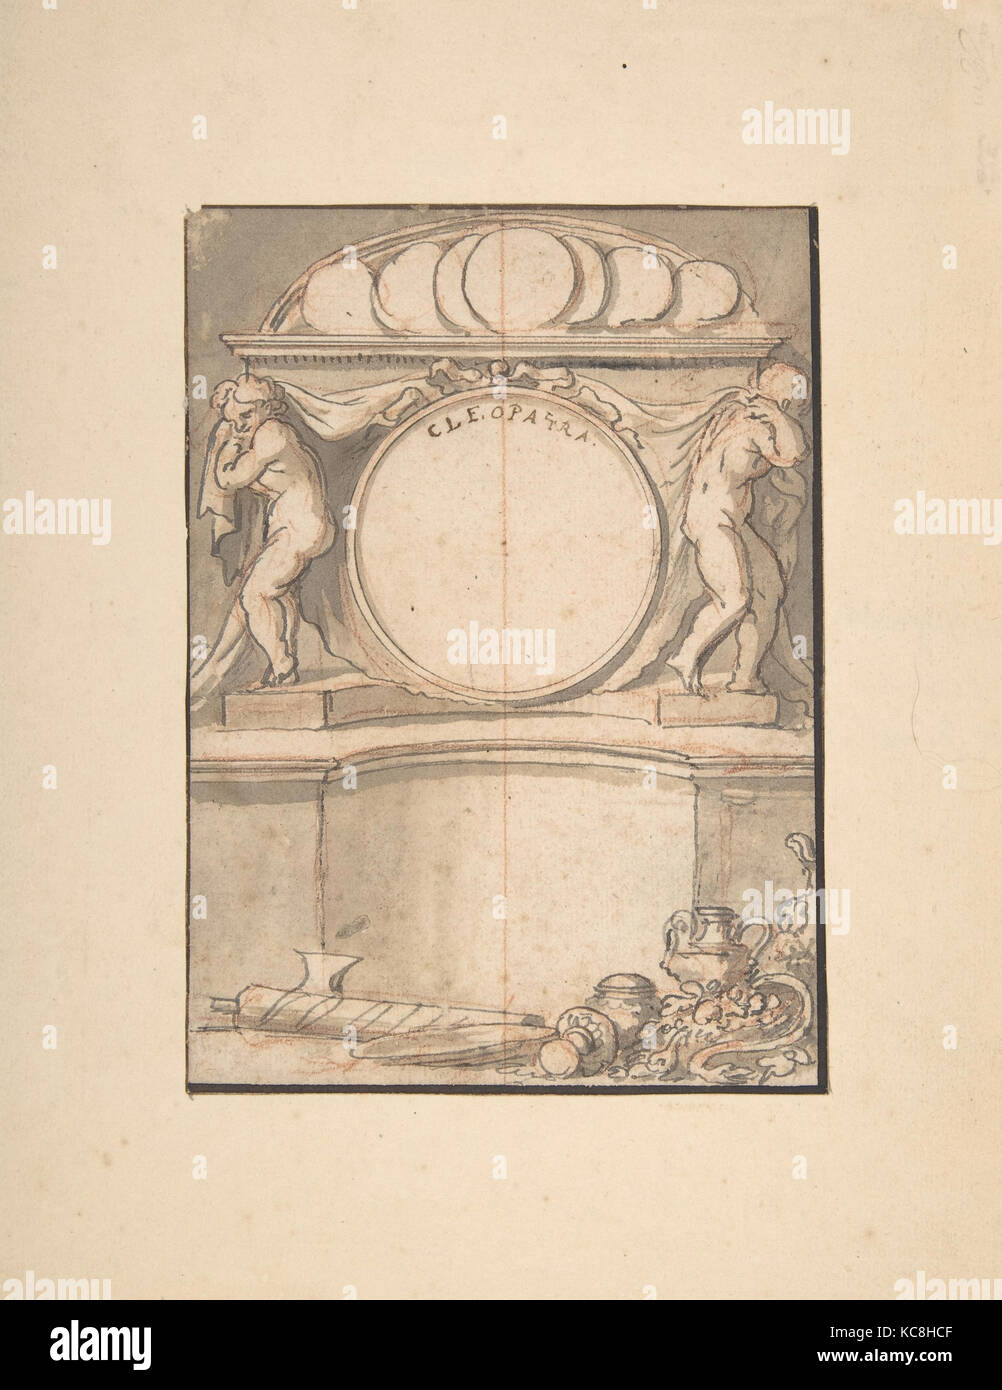 Zeichnung für ein Buch Abbildung - - Cleopatra, Anonym, Französisch, 18. Jahrhundert Stockfoto